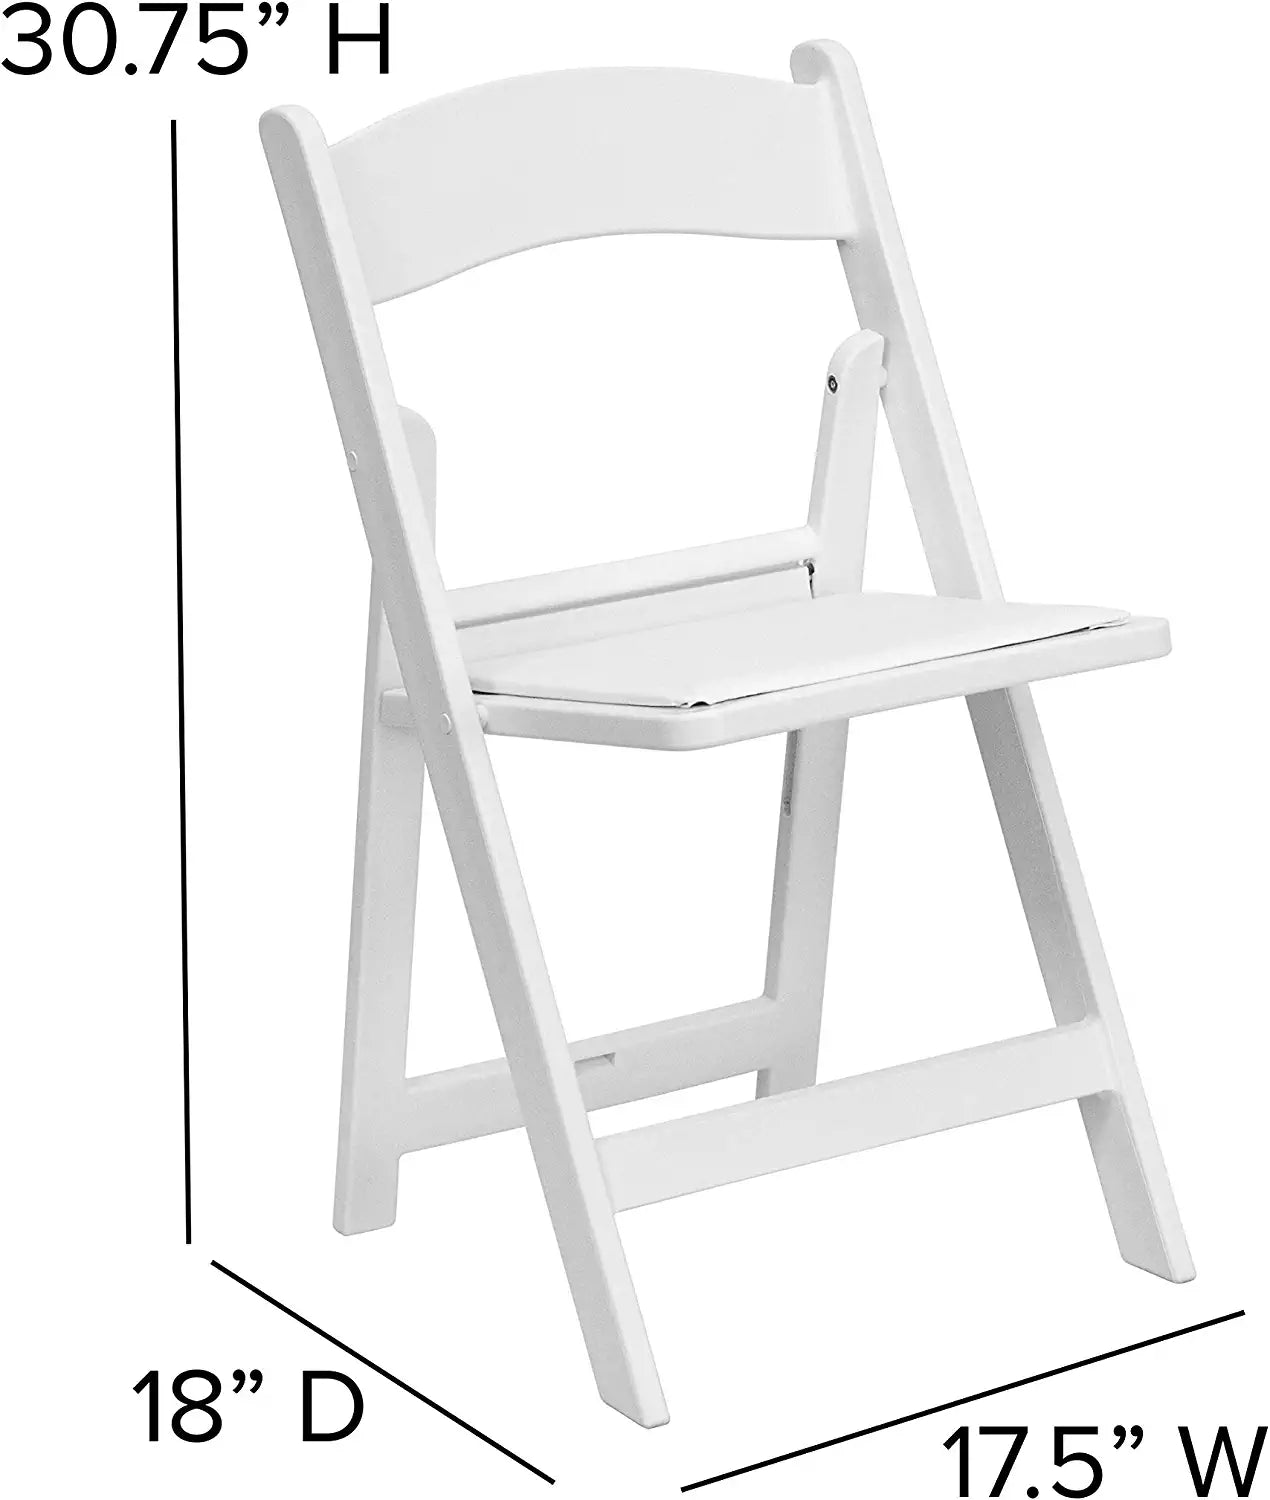 Flash Furniture Hercules√É¬¢√¢‚Ç¨≈æ√Ç¬¢ Series Folding Chair - White Resin - 2 Pack 1000LB Weight Capacity Comfortable Event Chair - Light Weight Folding Chair